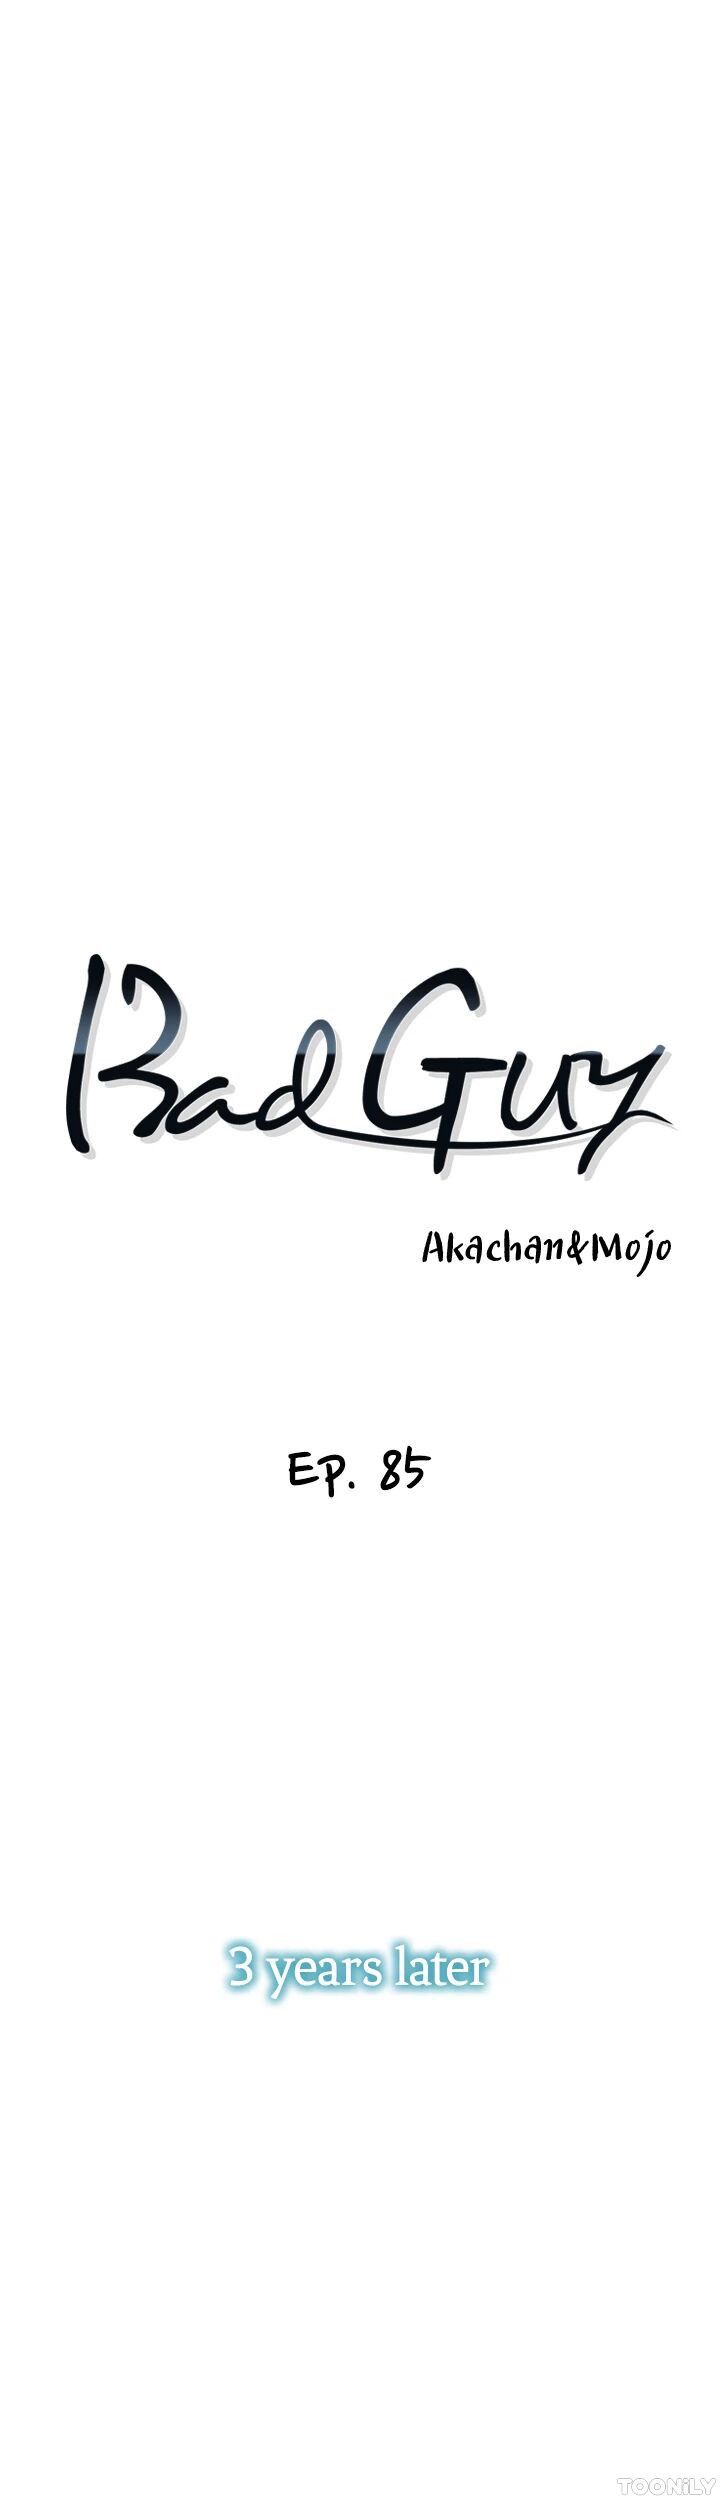 Bad Guy image